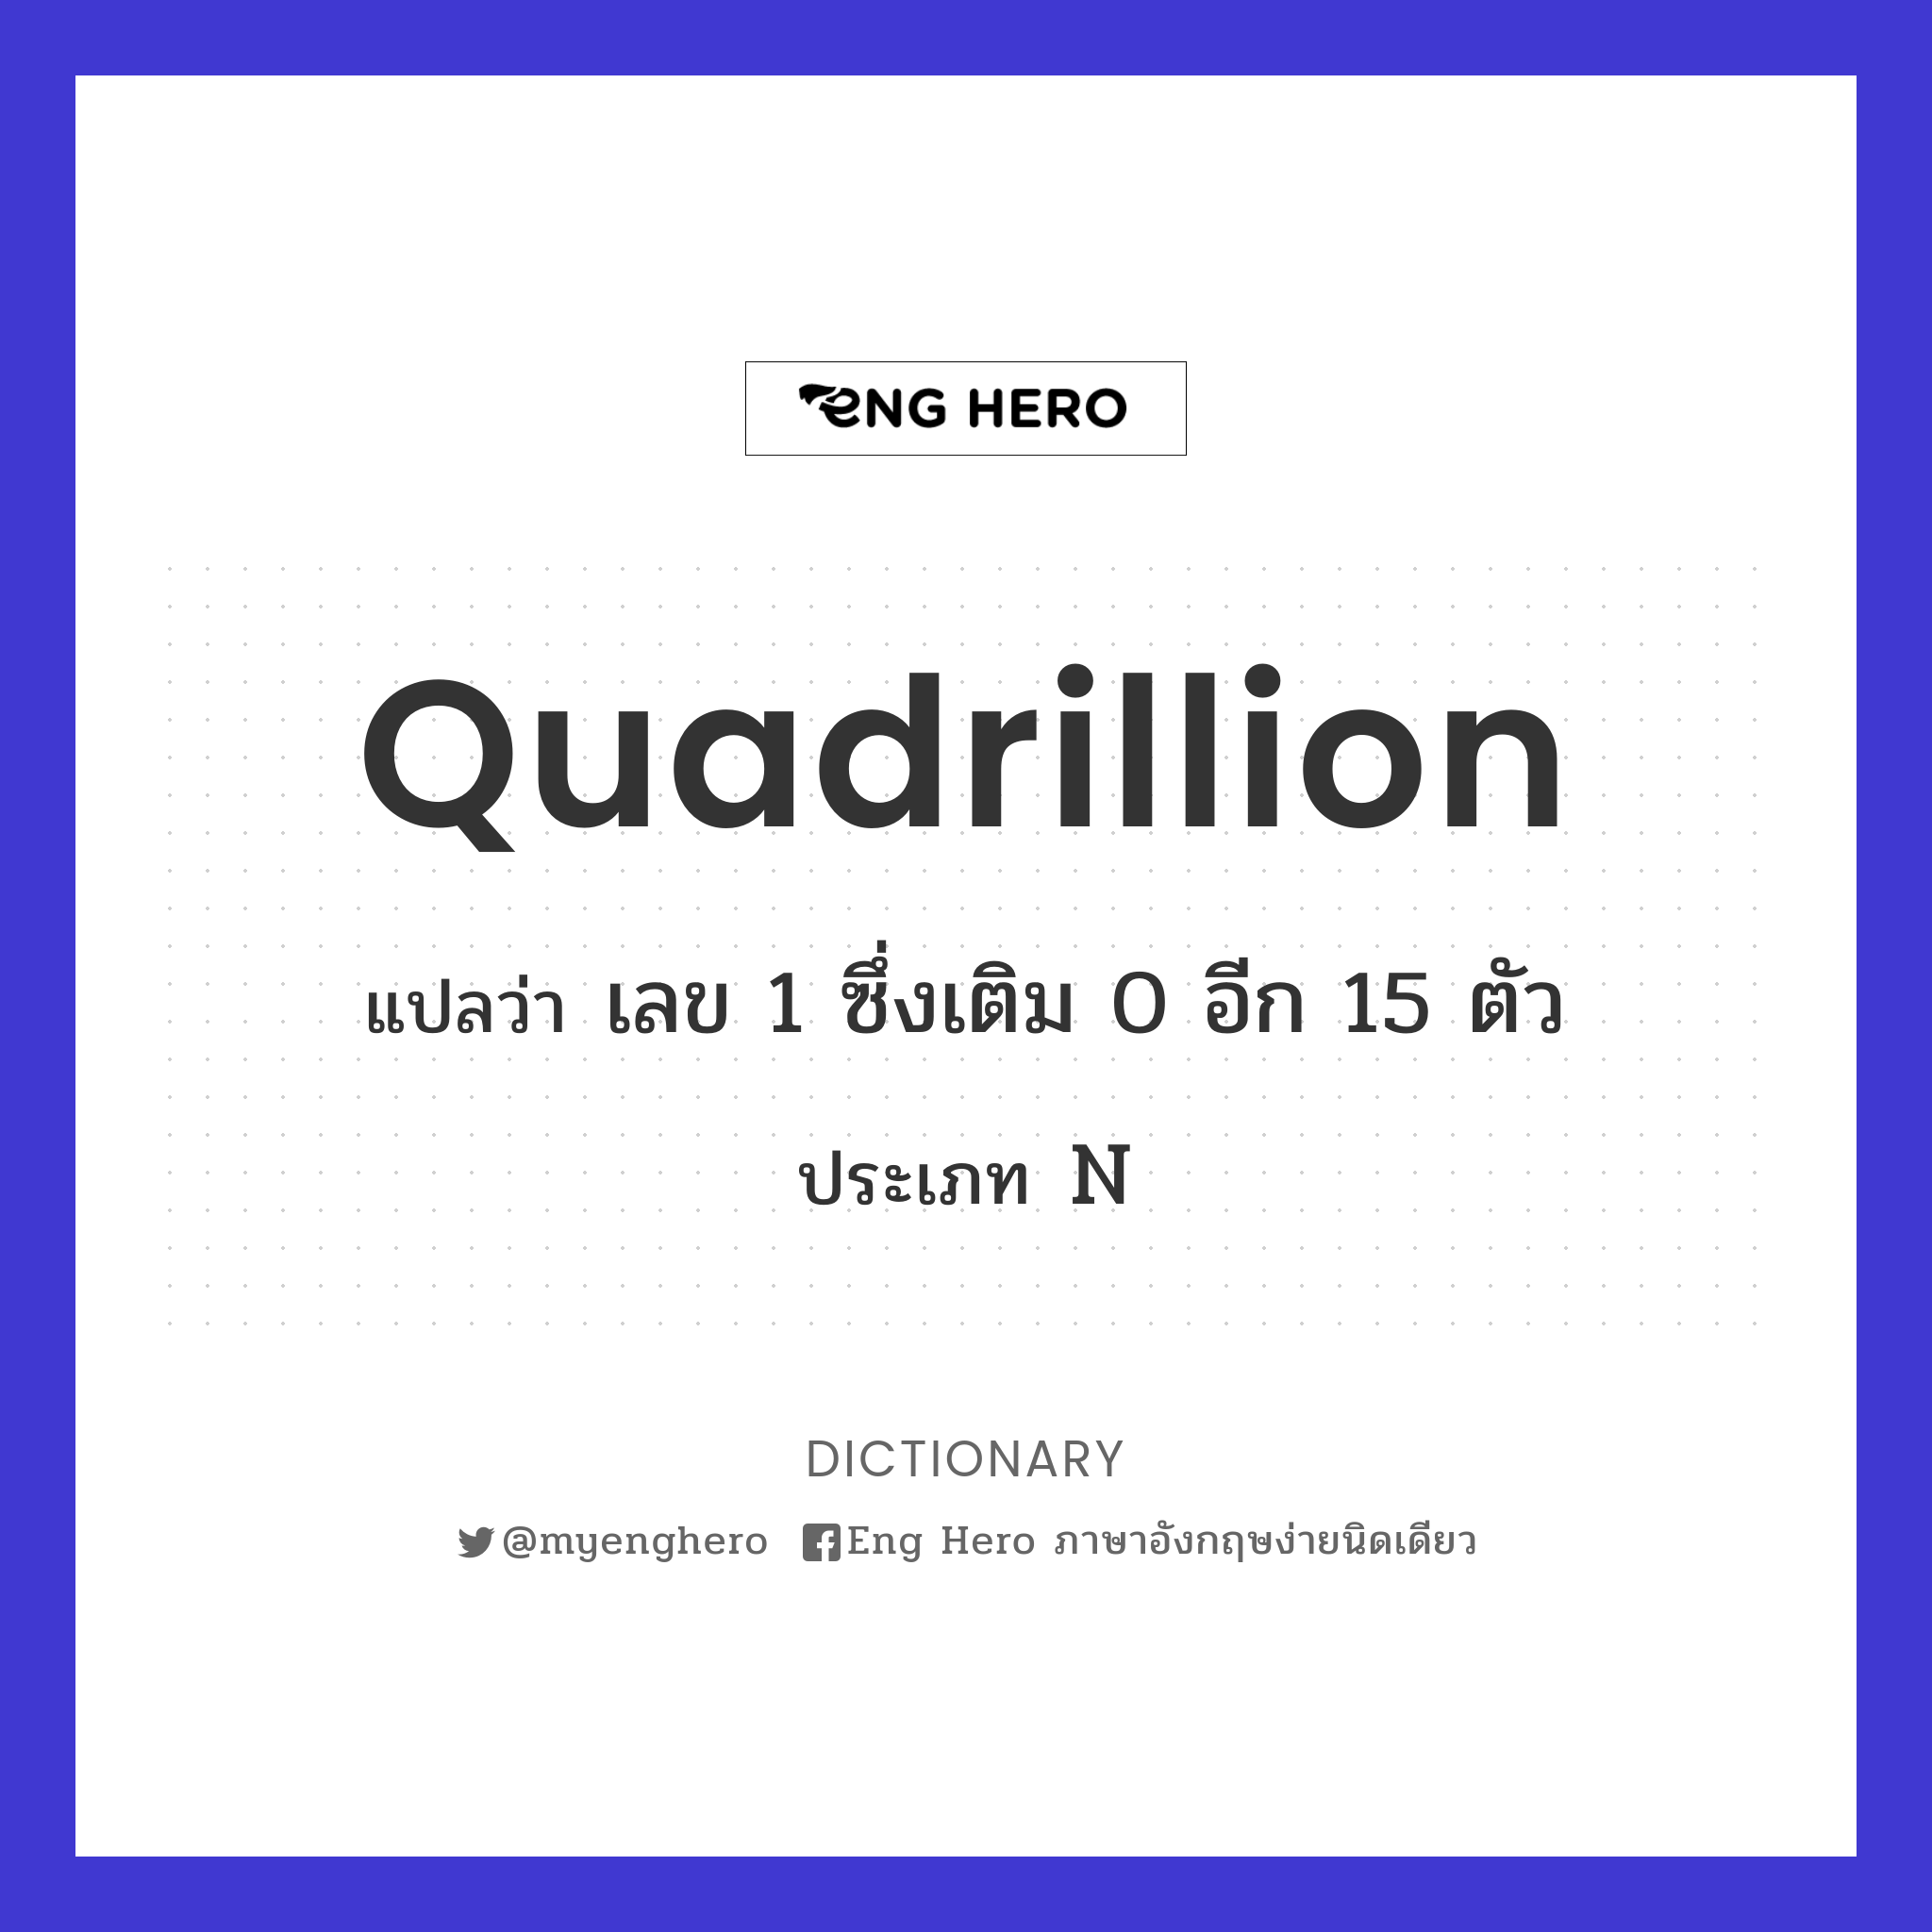 quadrillion